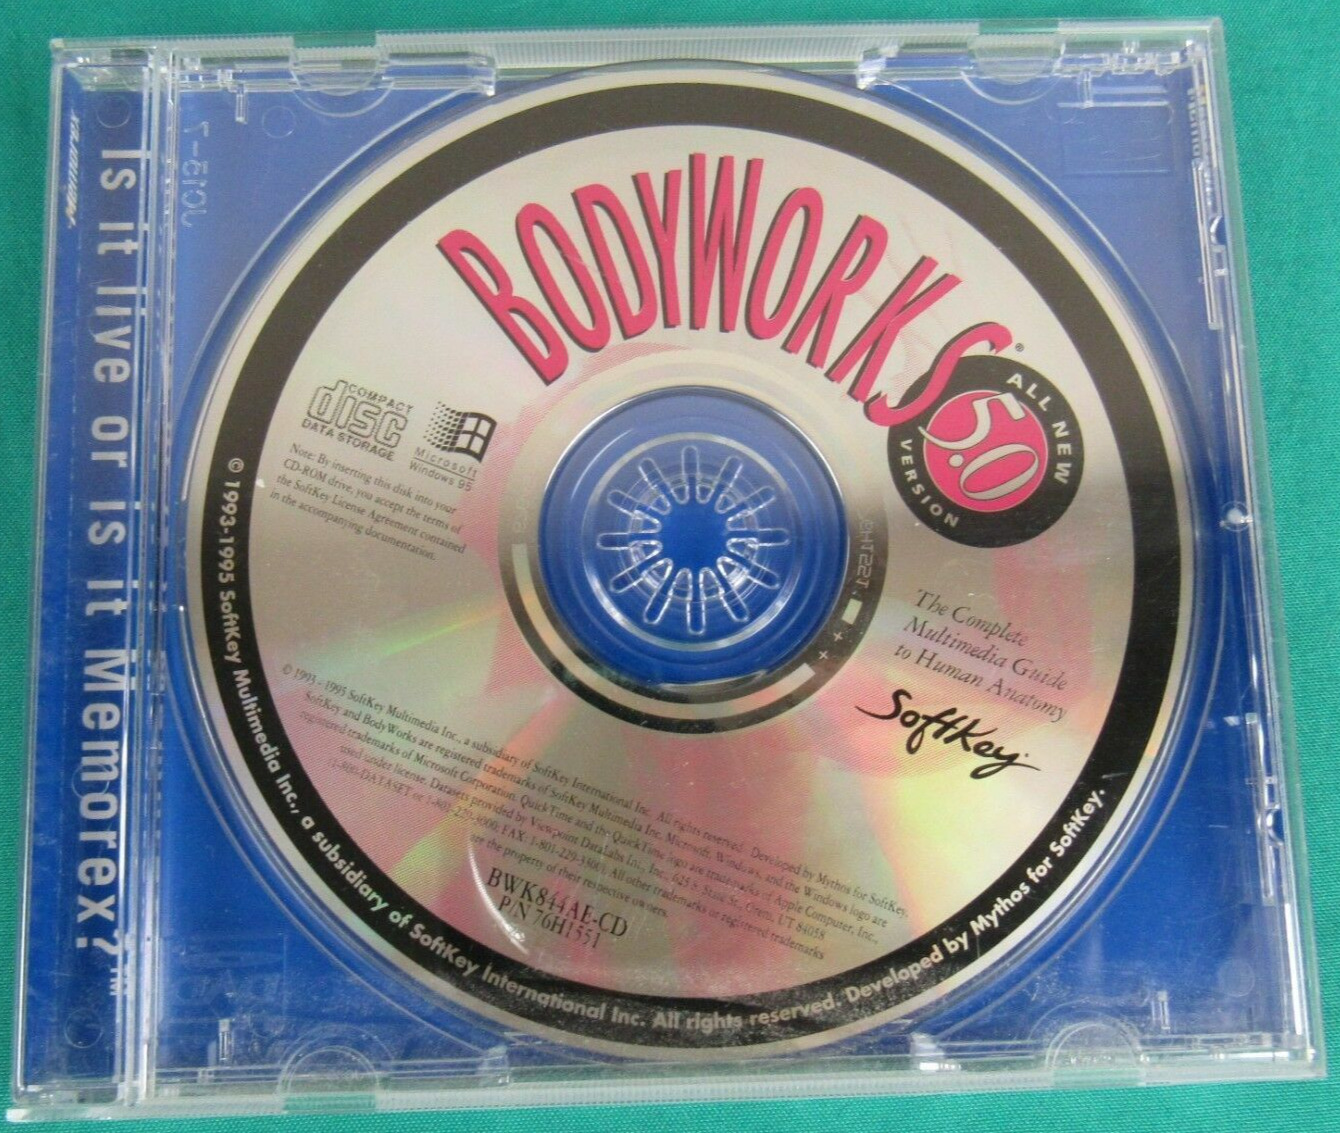 BodyWorks 5.0 CD-ROM for Windows 